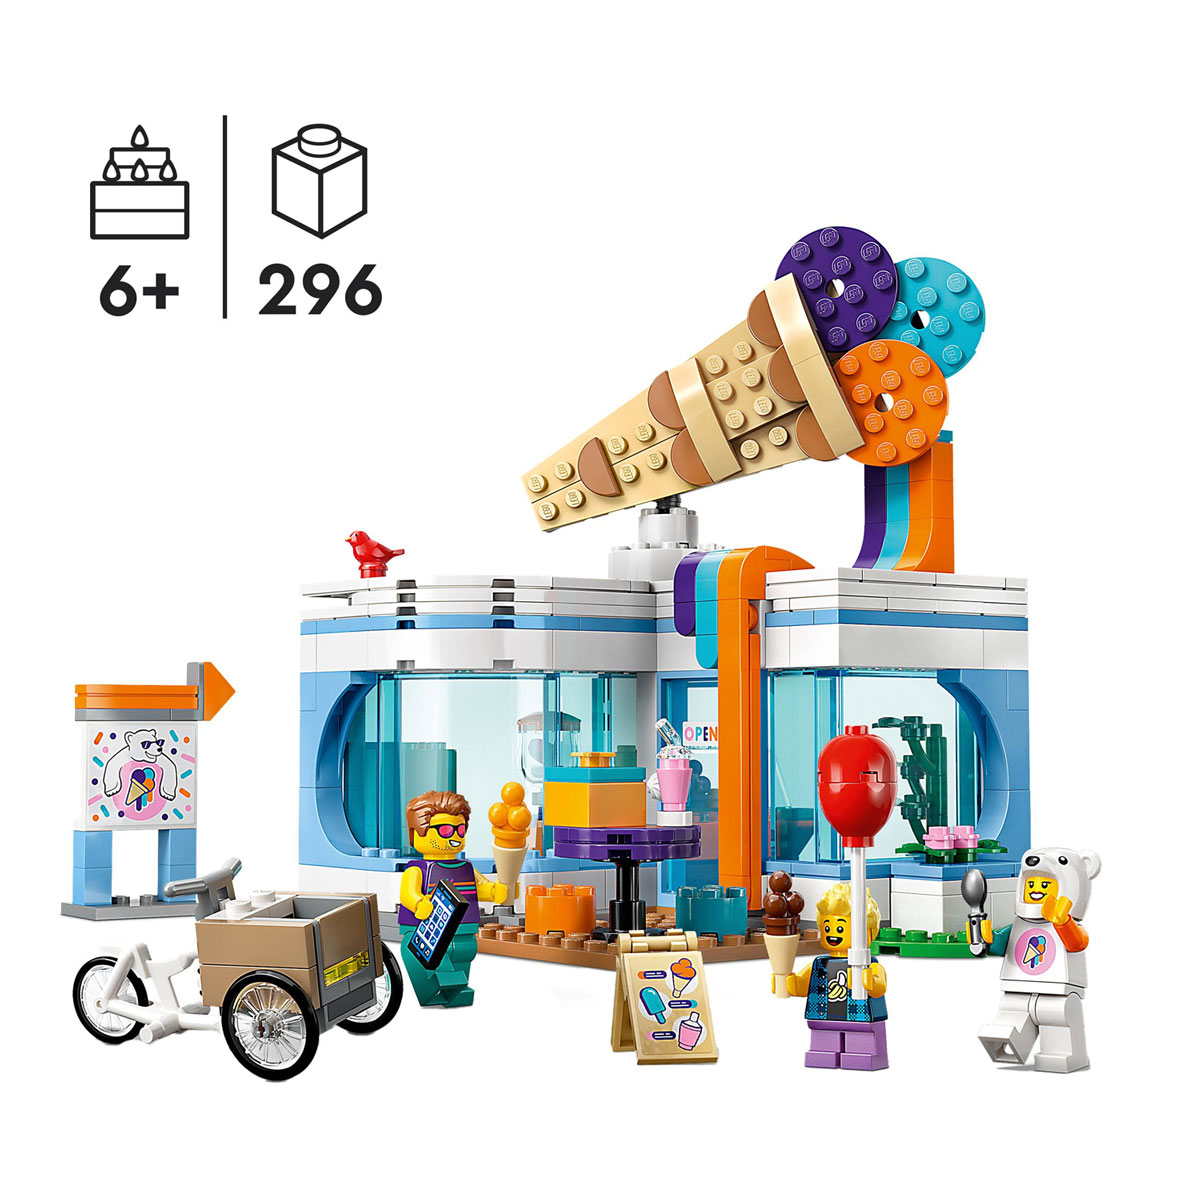 60363 LEGO City Eisdiele